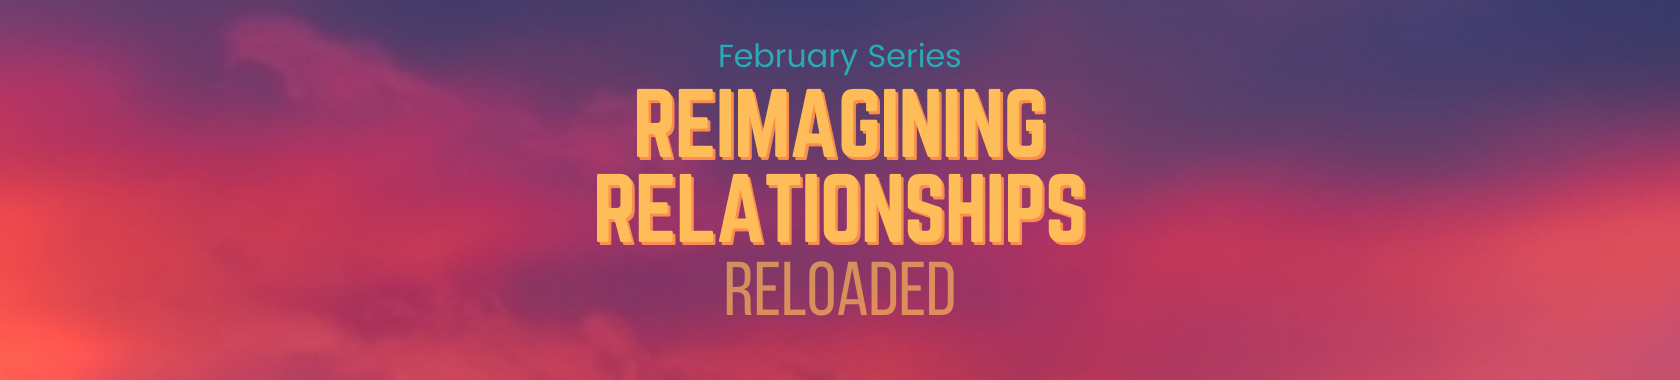 Reimagining Relationships Series banner - website